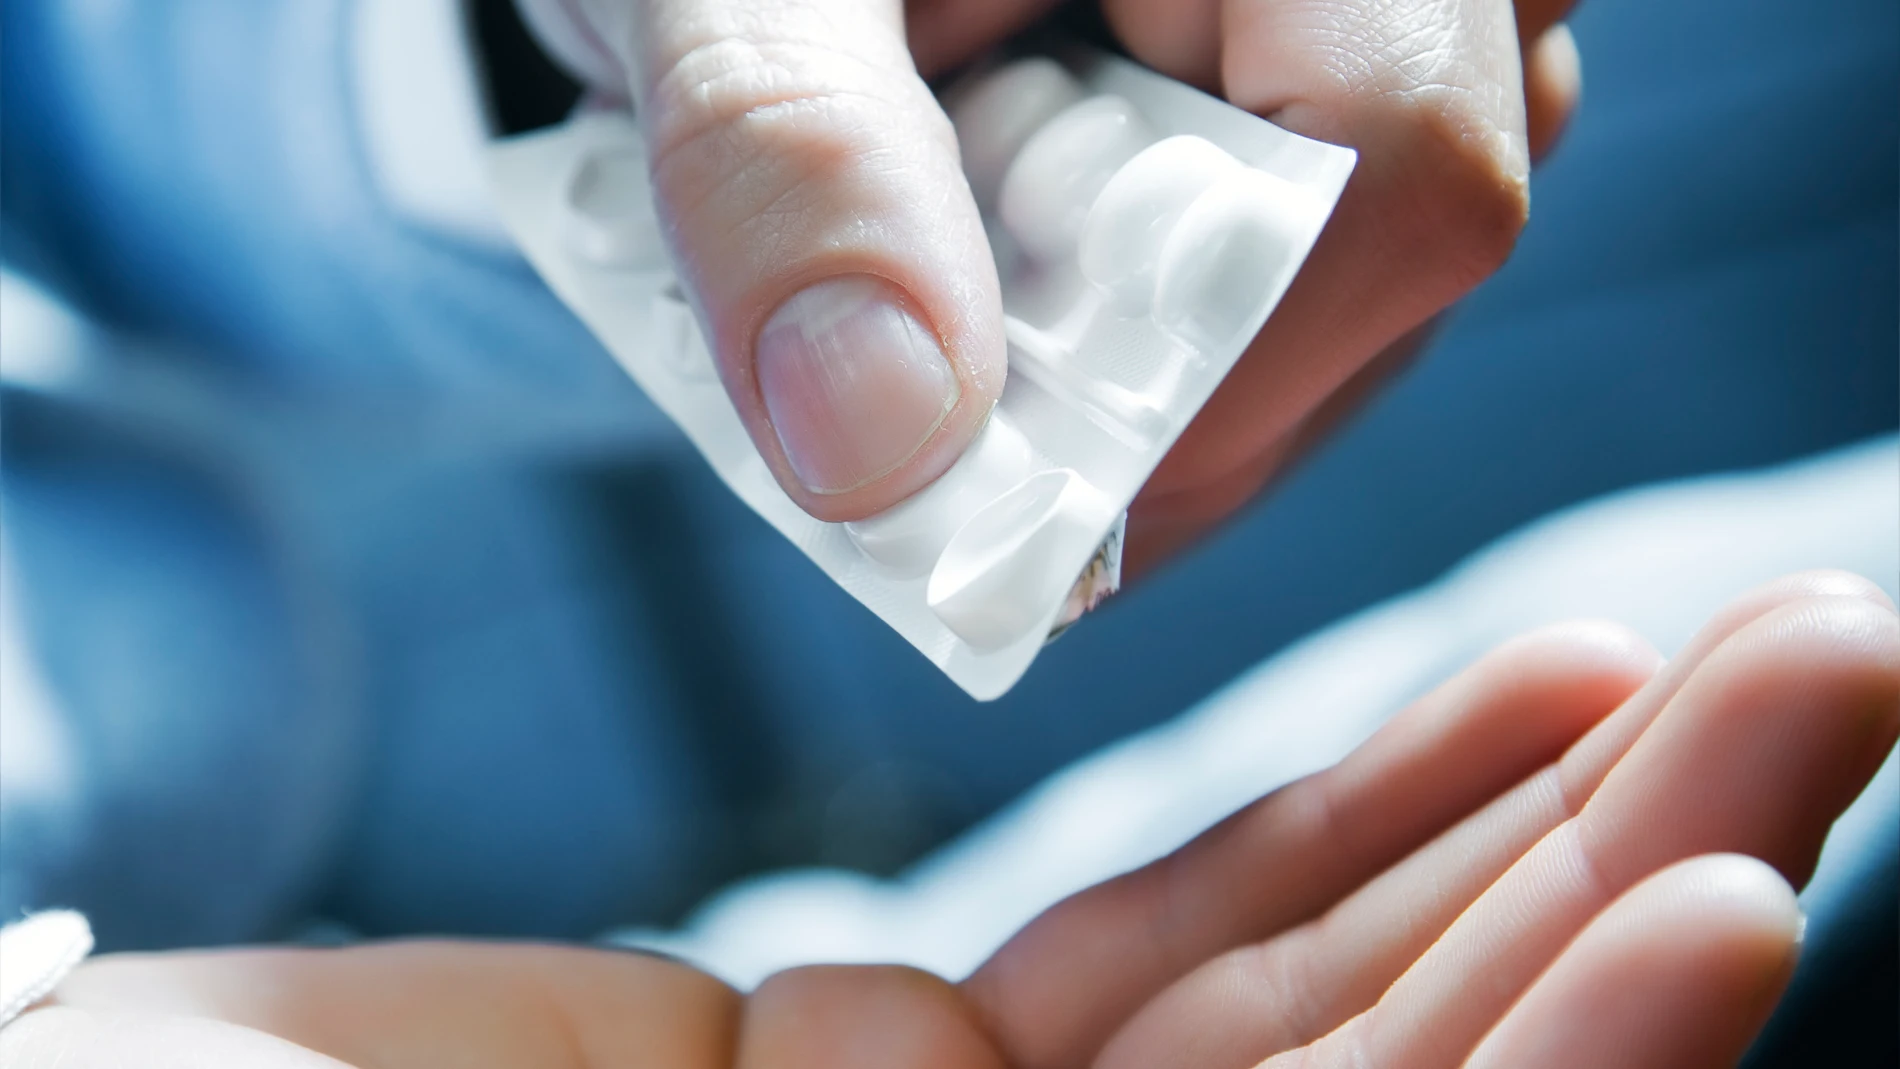 Dos píldoras anticonceptivas masculinas reducen eficazmente la testosterona y sin causar importantes efectos secundarios